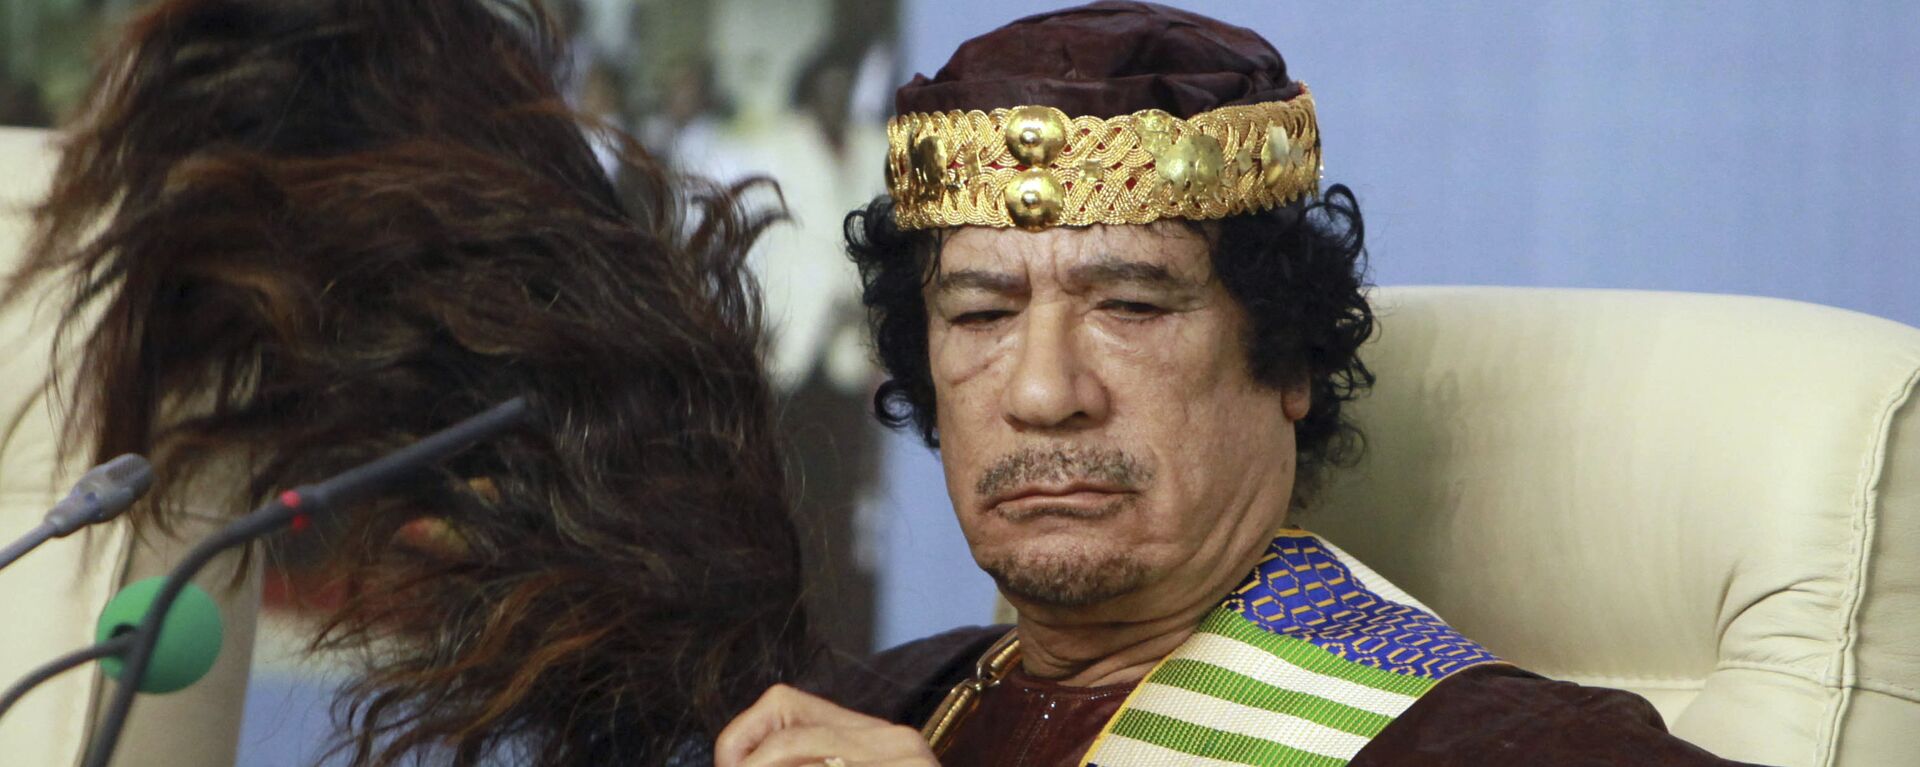 Бивши либијски лидер Муамер Гадафи - Sputnik Србија, 1920, 06.09.2021